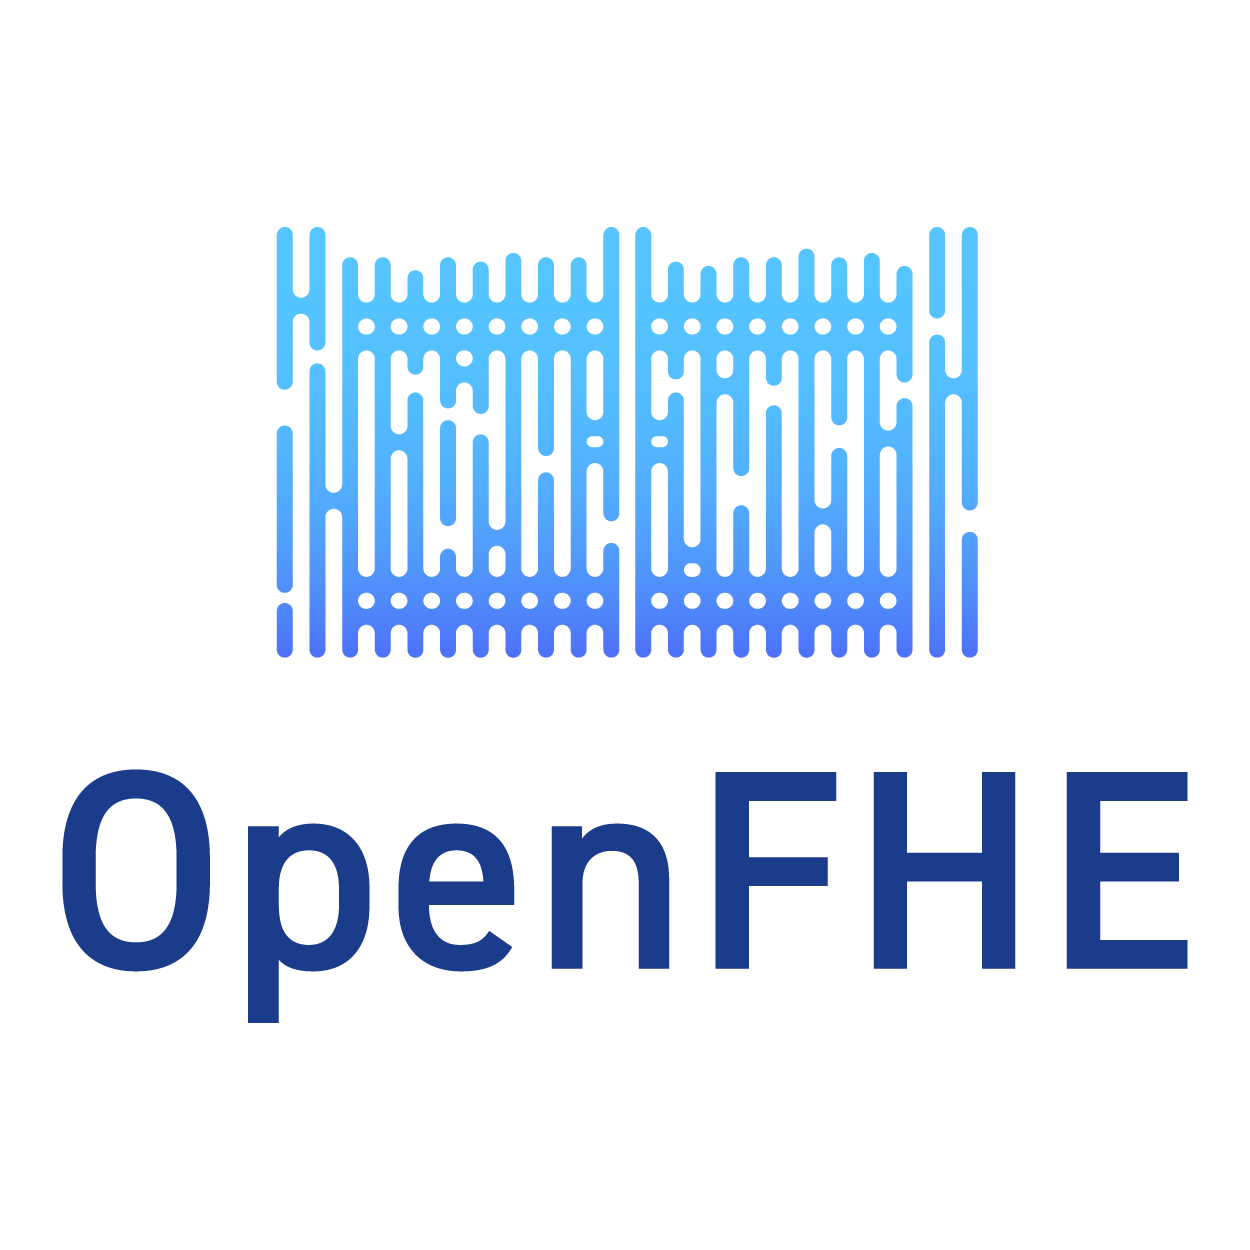 openfhe_logo.png